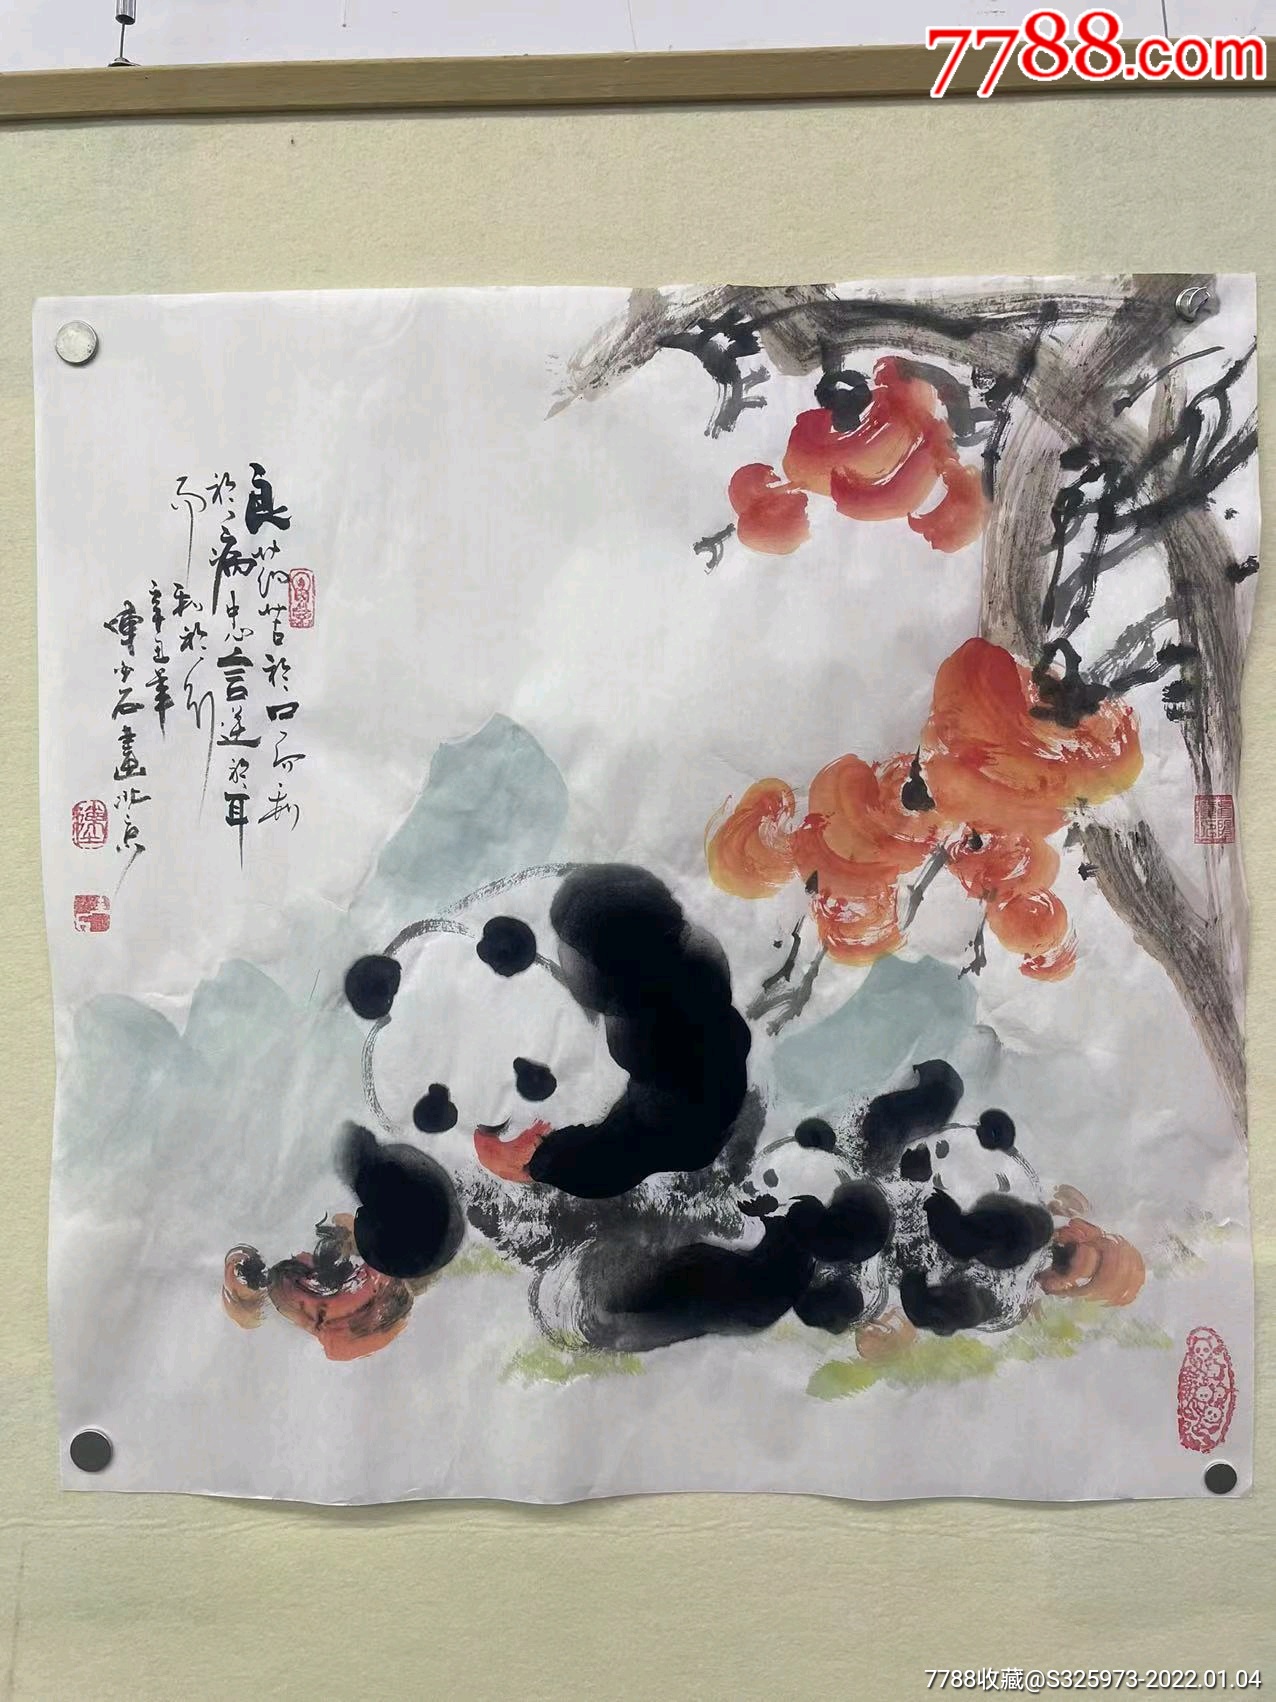 熊猫画家陈金石四尺斗方款式多多都有合影视频喜欢的私聊可以定制